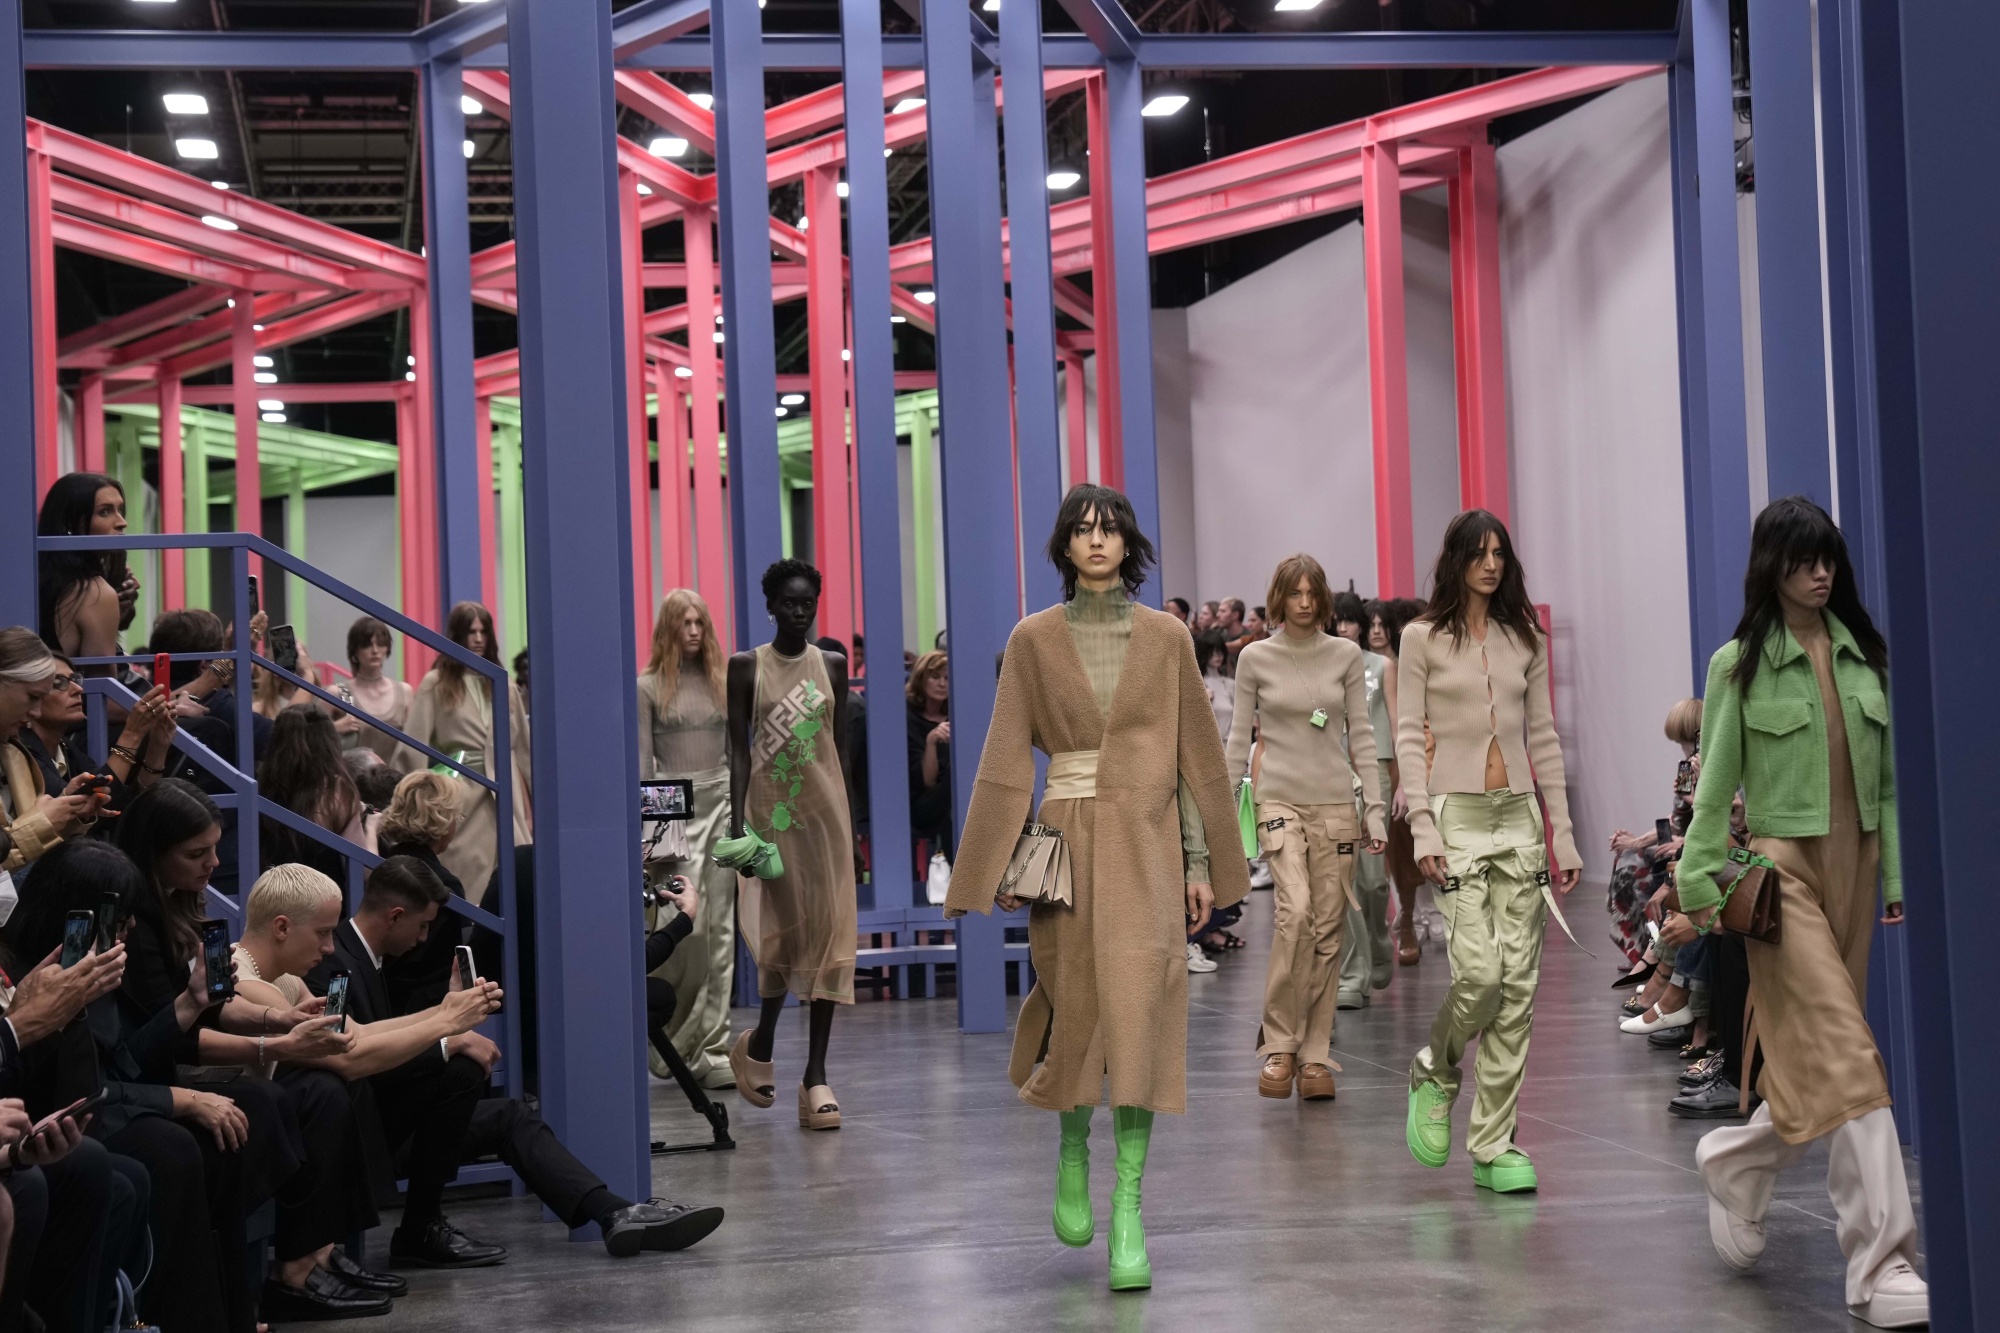 Fendi, Diesel Open Milan Fashion Week With Sense of Renewal - Bloomberg